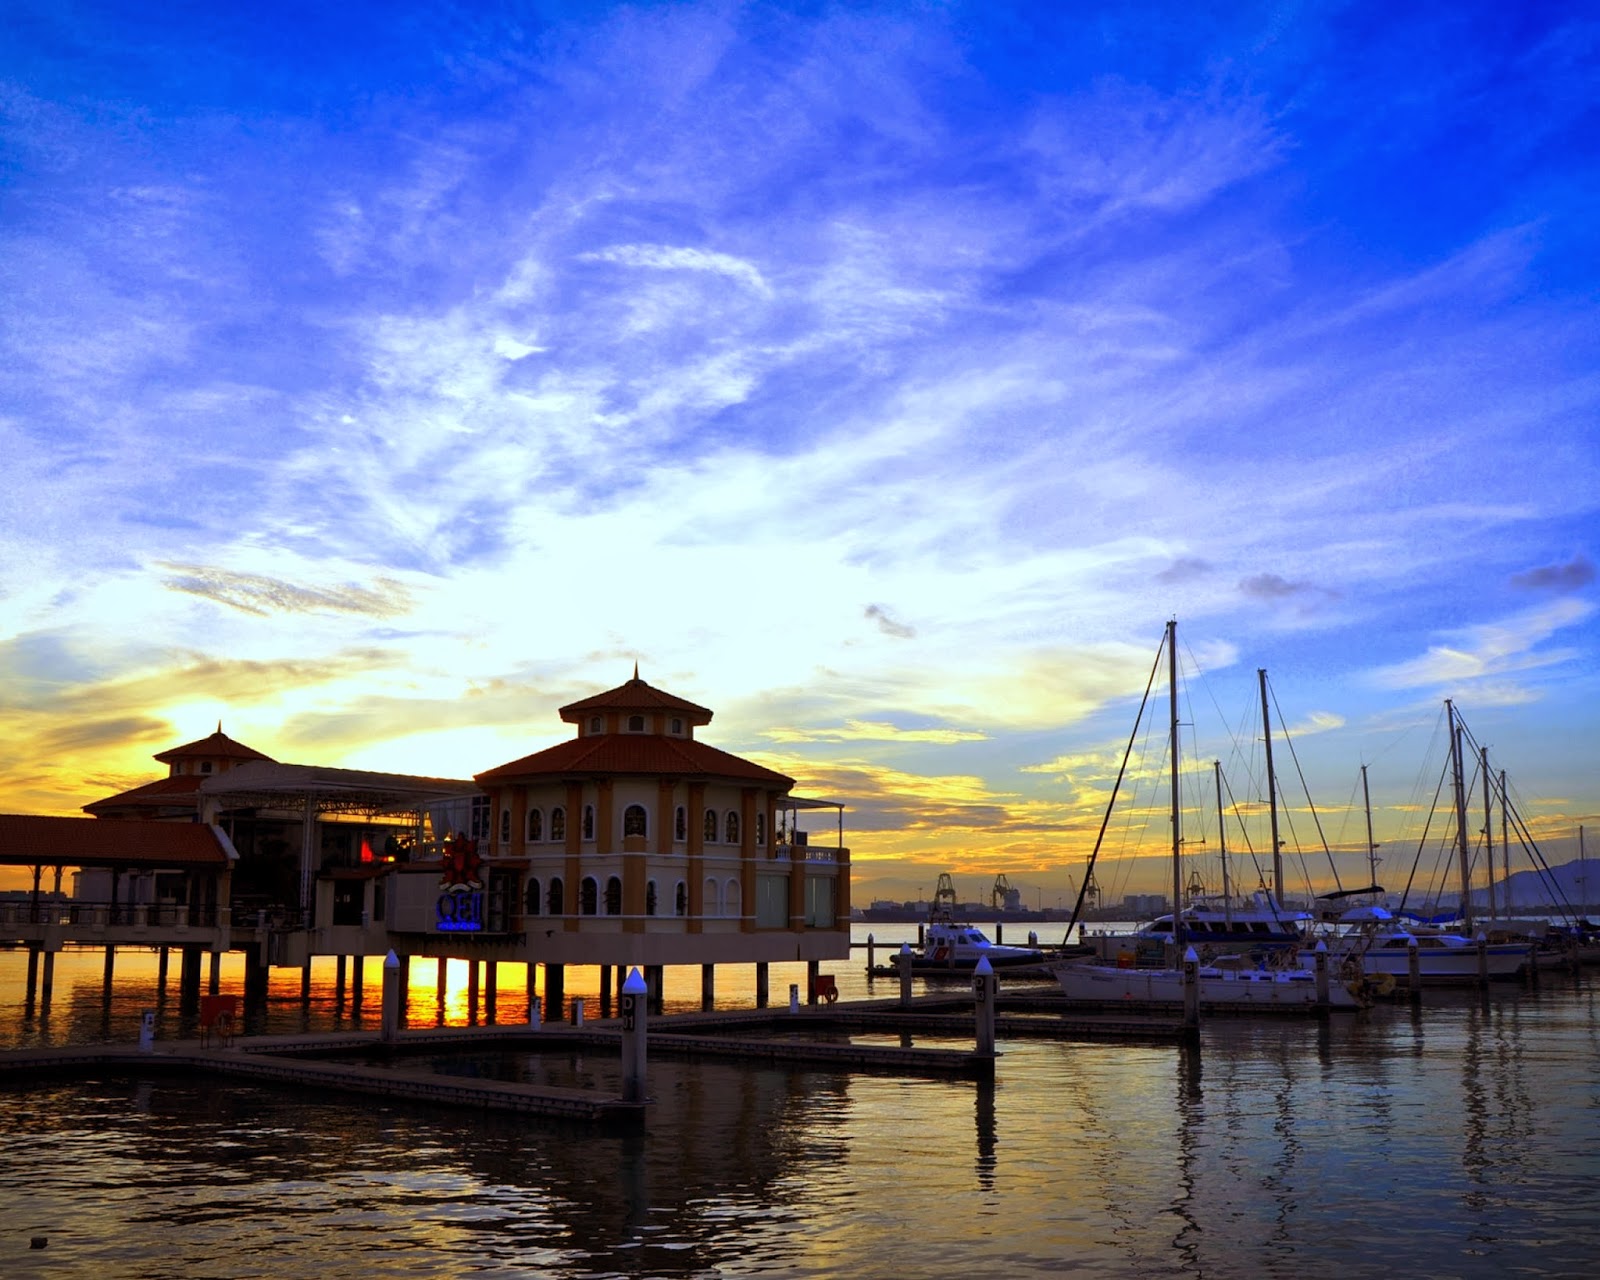 Senarai Tempat Menarik Di Pulau Pinang